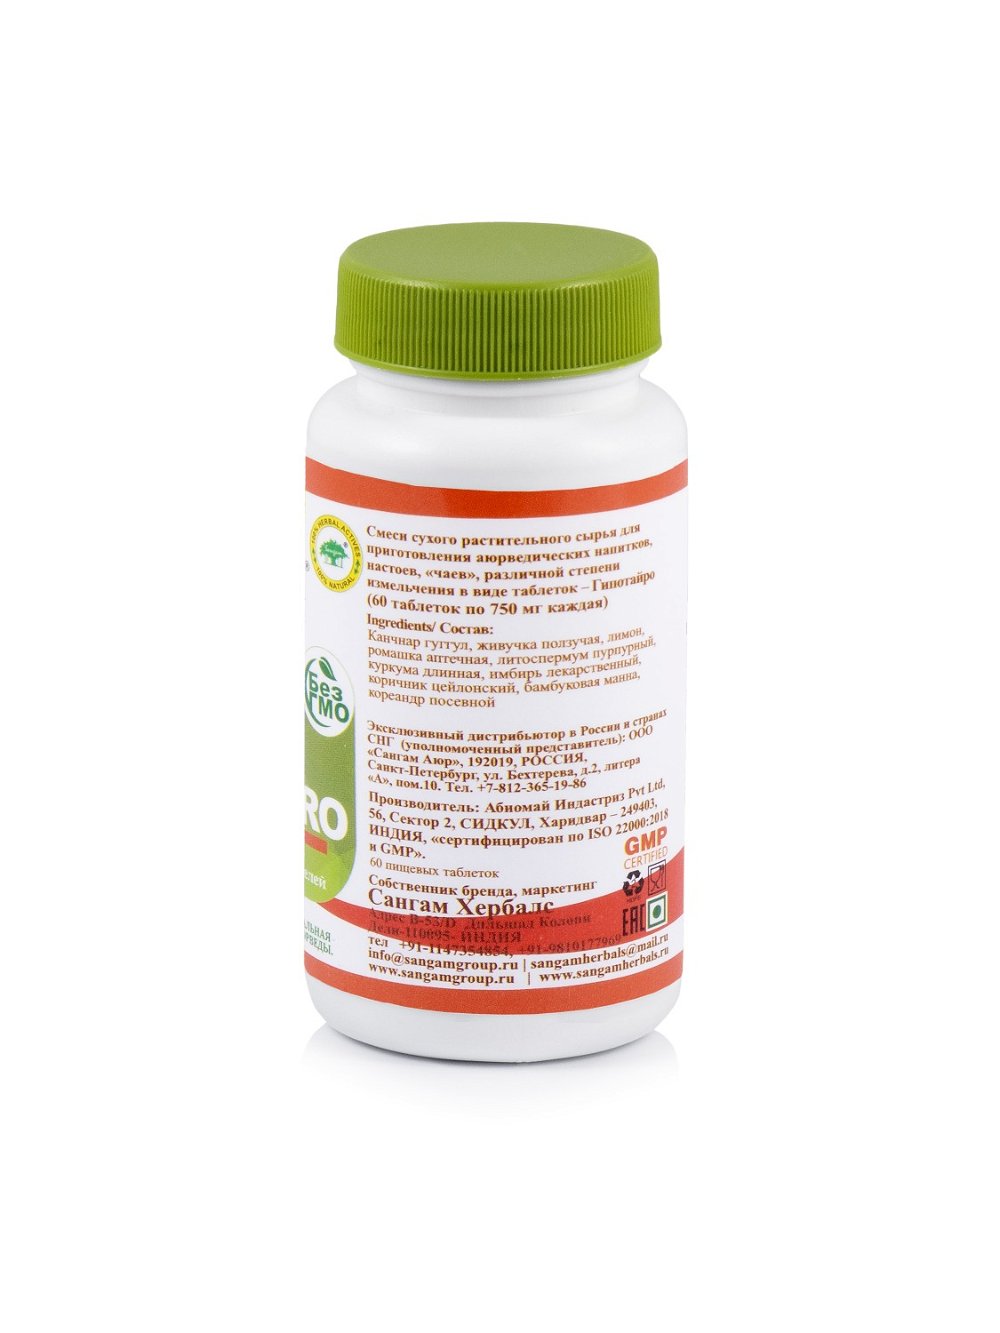 Гипотайро Sangam Herbals (60 таблеток)